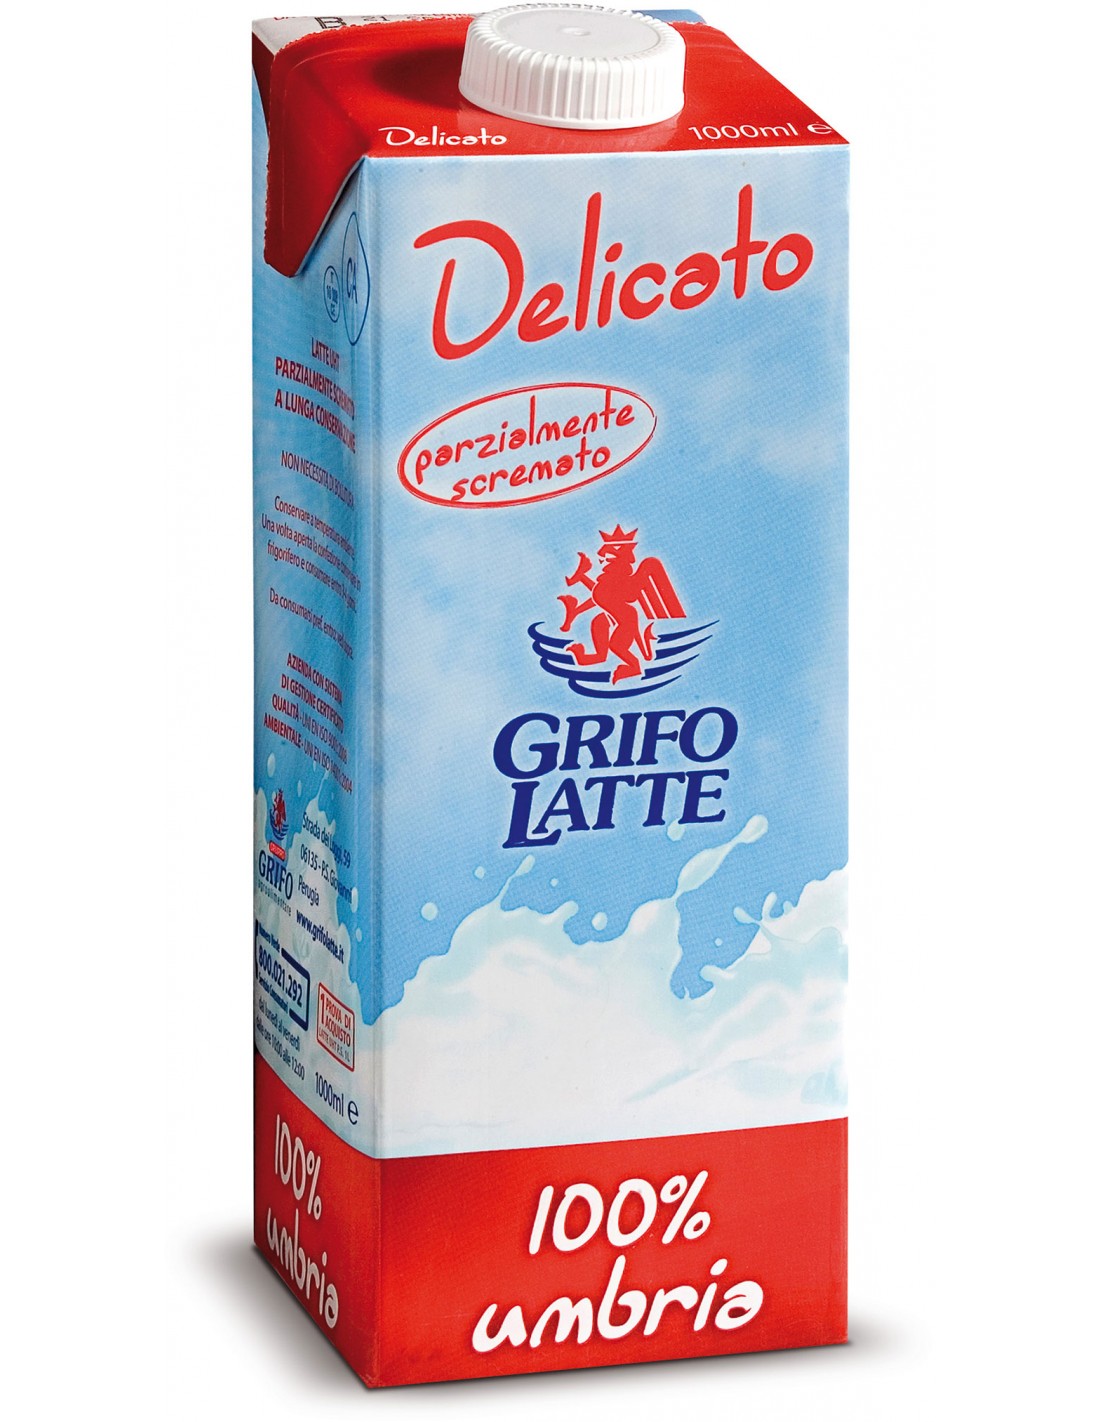 Latte UHT Delicato Parzialmente Scremato Grifo - CARTONE